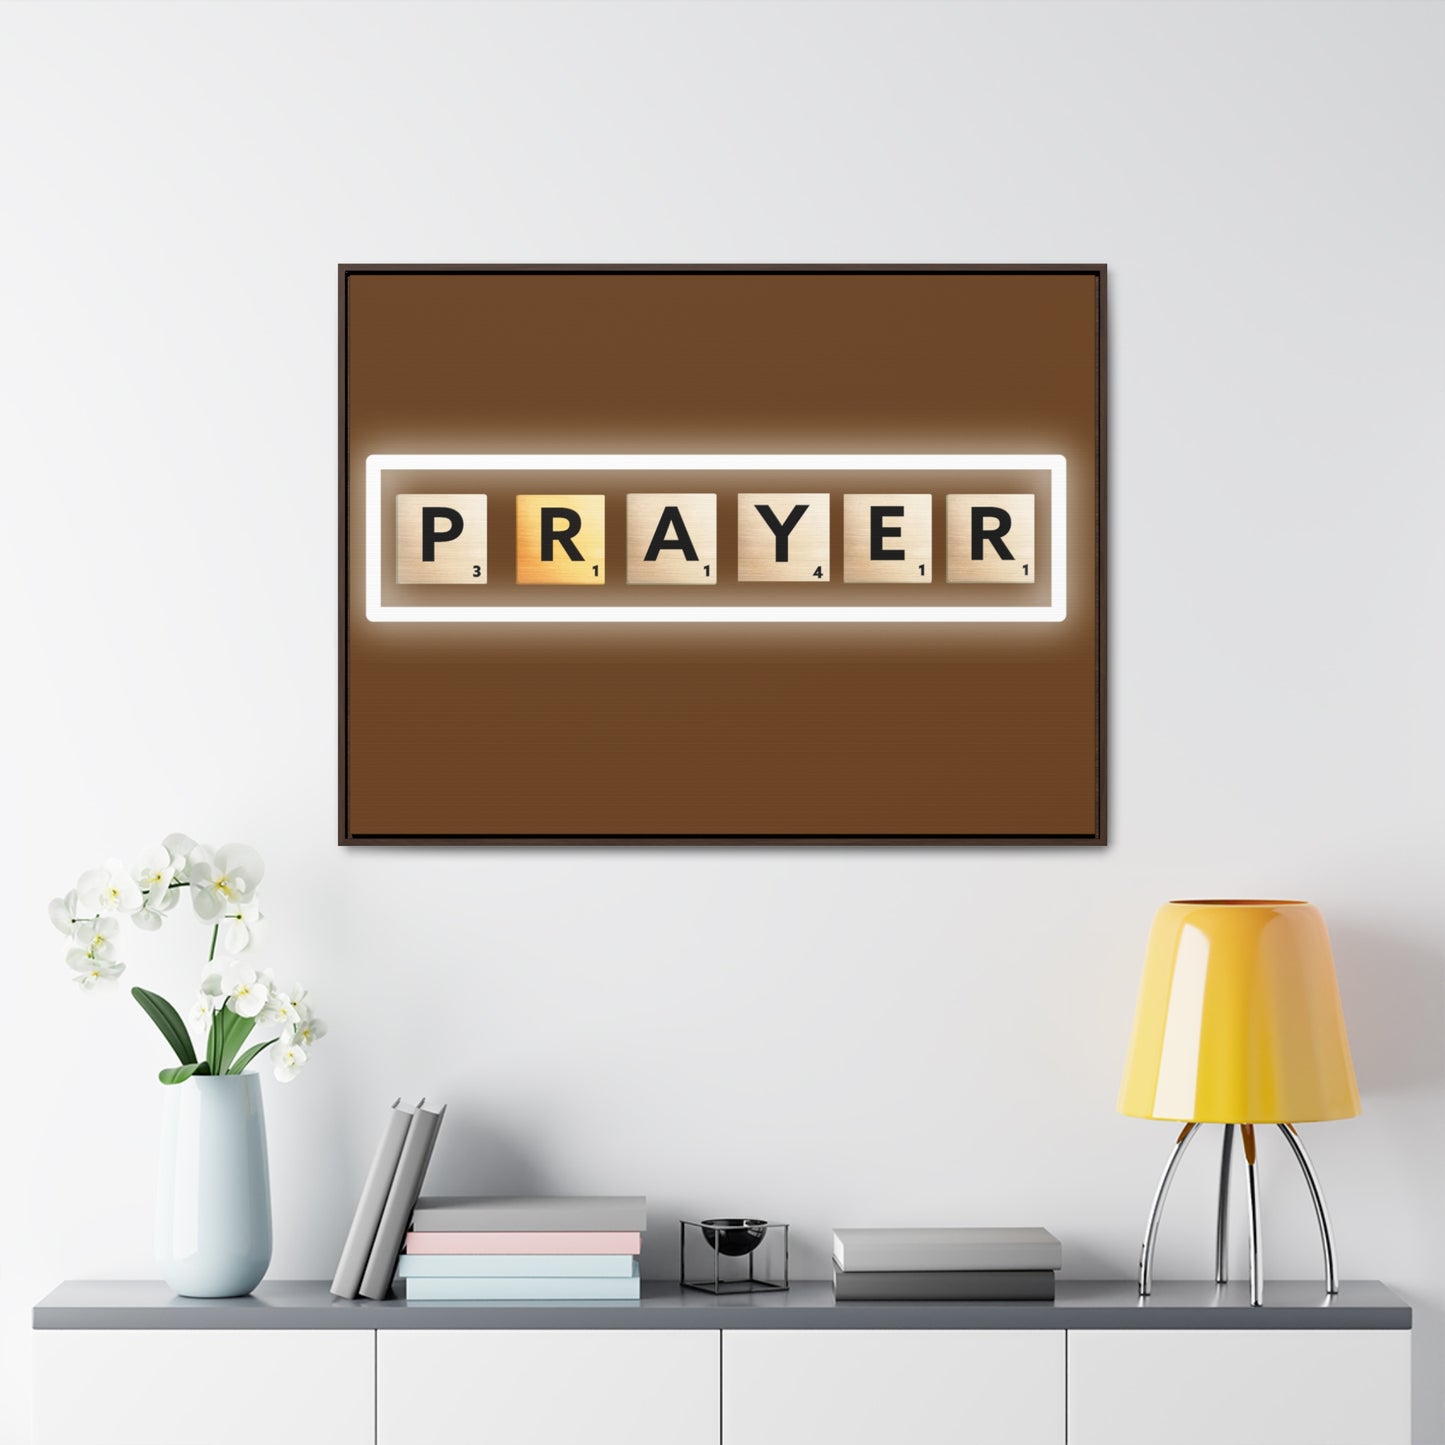 Arte cristiano de la pared: oración (marco flotante)